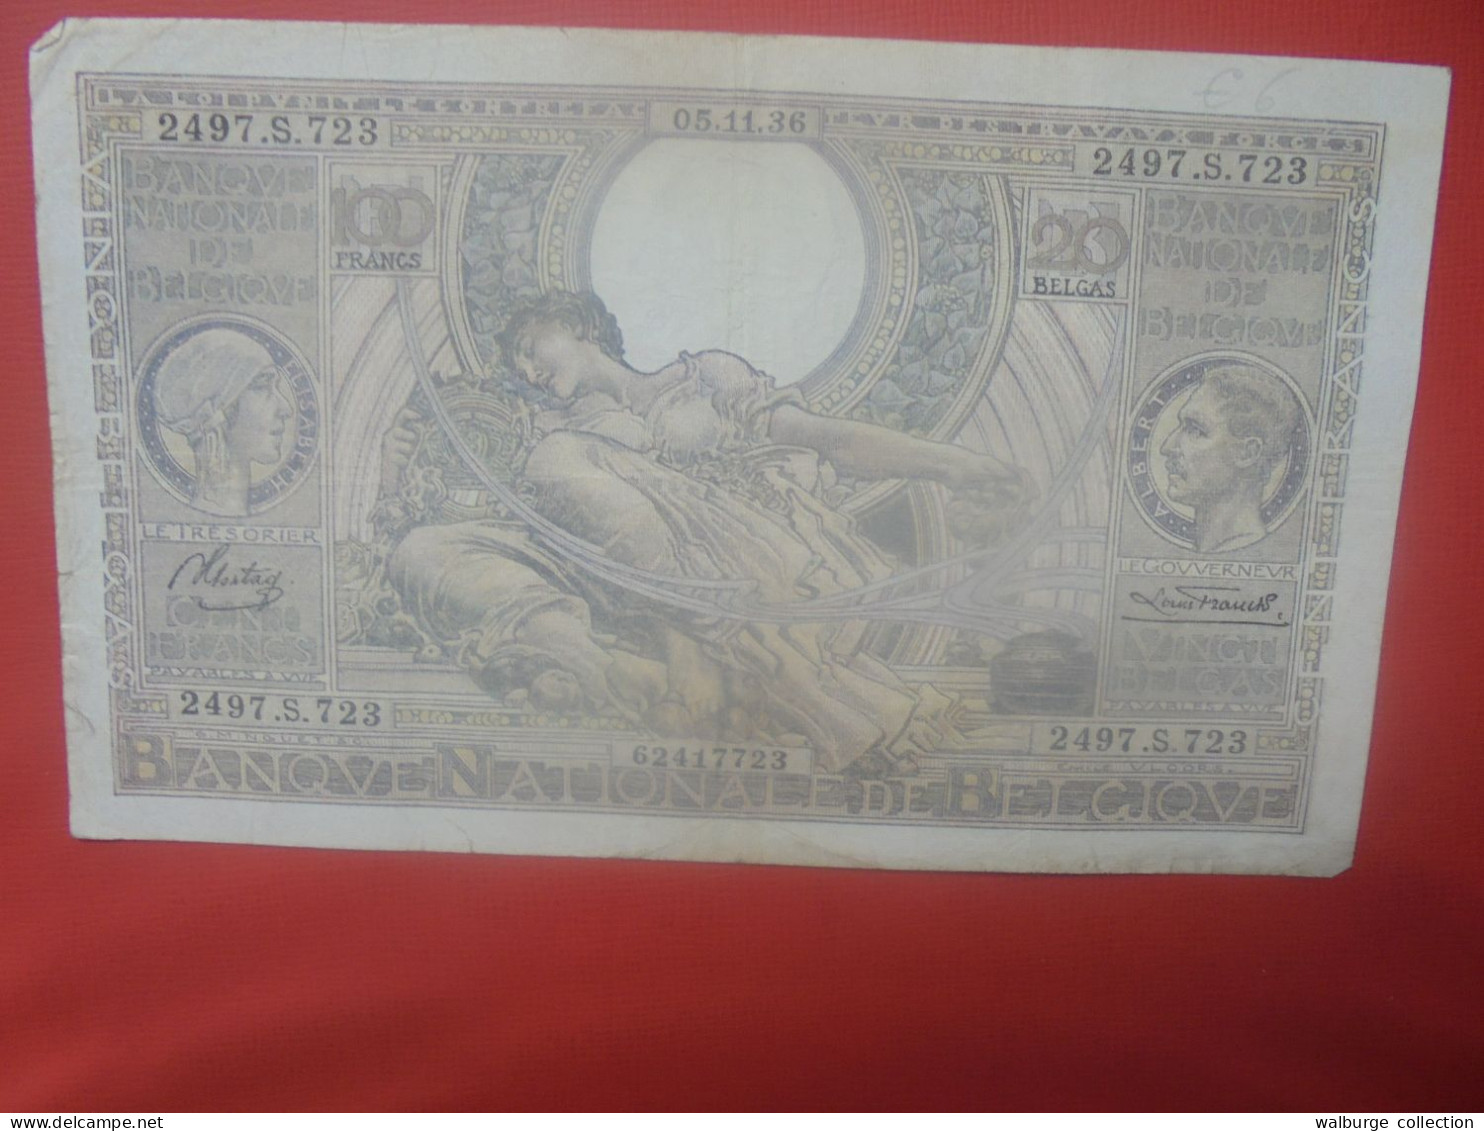 BELGIQUE 100 Francs 5-11-36 Circuler (B.18) - 100 Francs & 100 Francs-20 Belgas